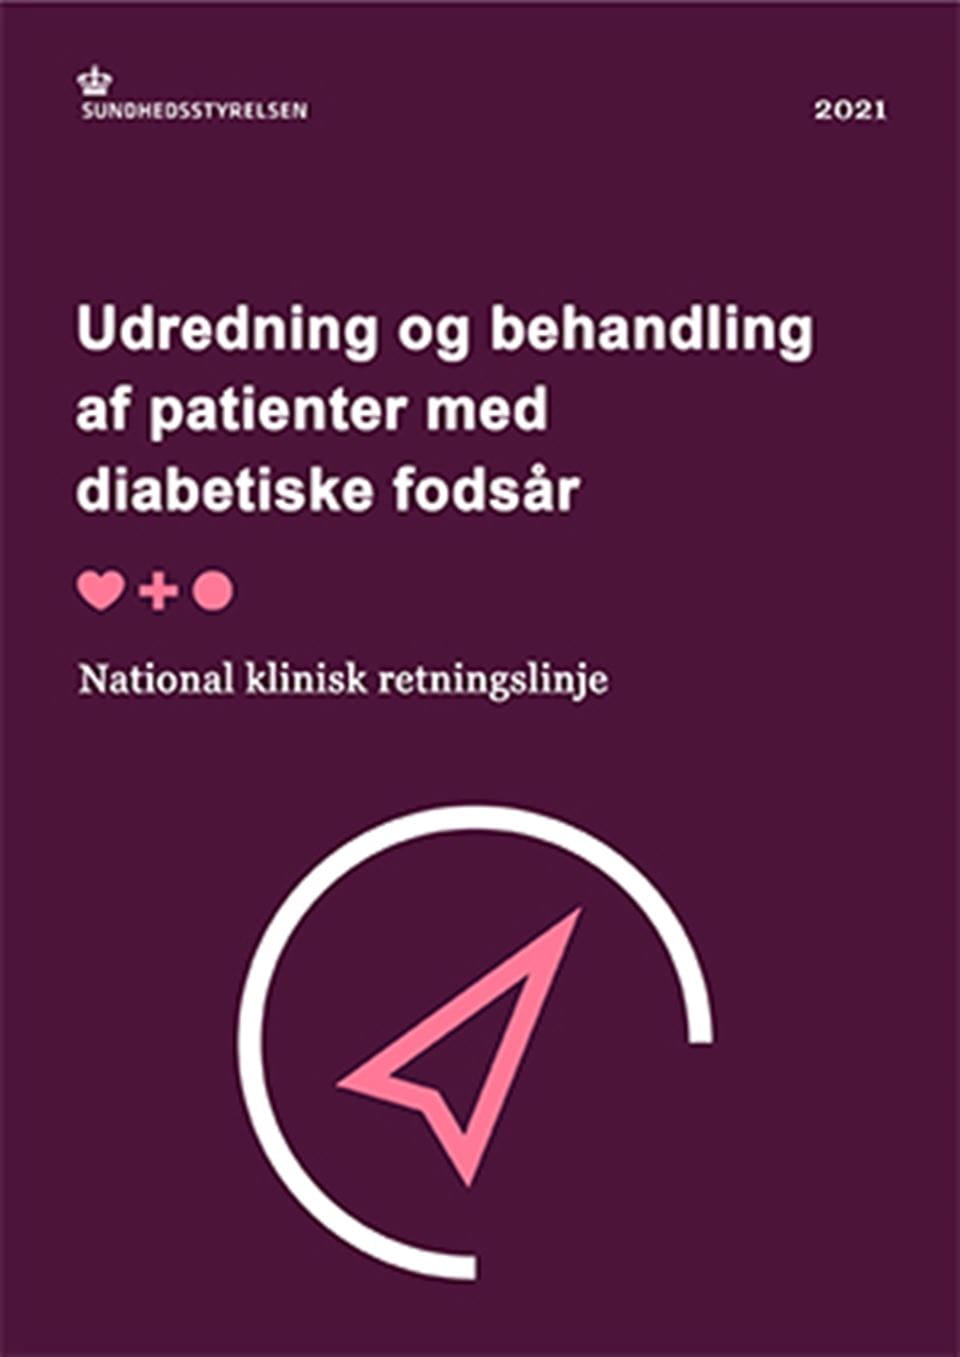 NKR: Udredning og behandling af patienter med diabetiske fodsår